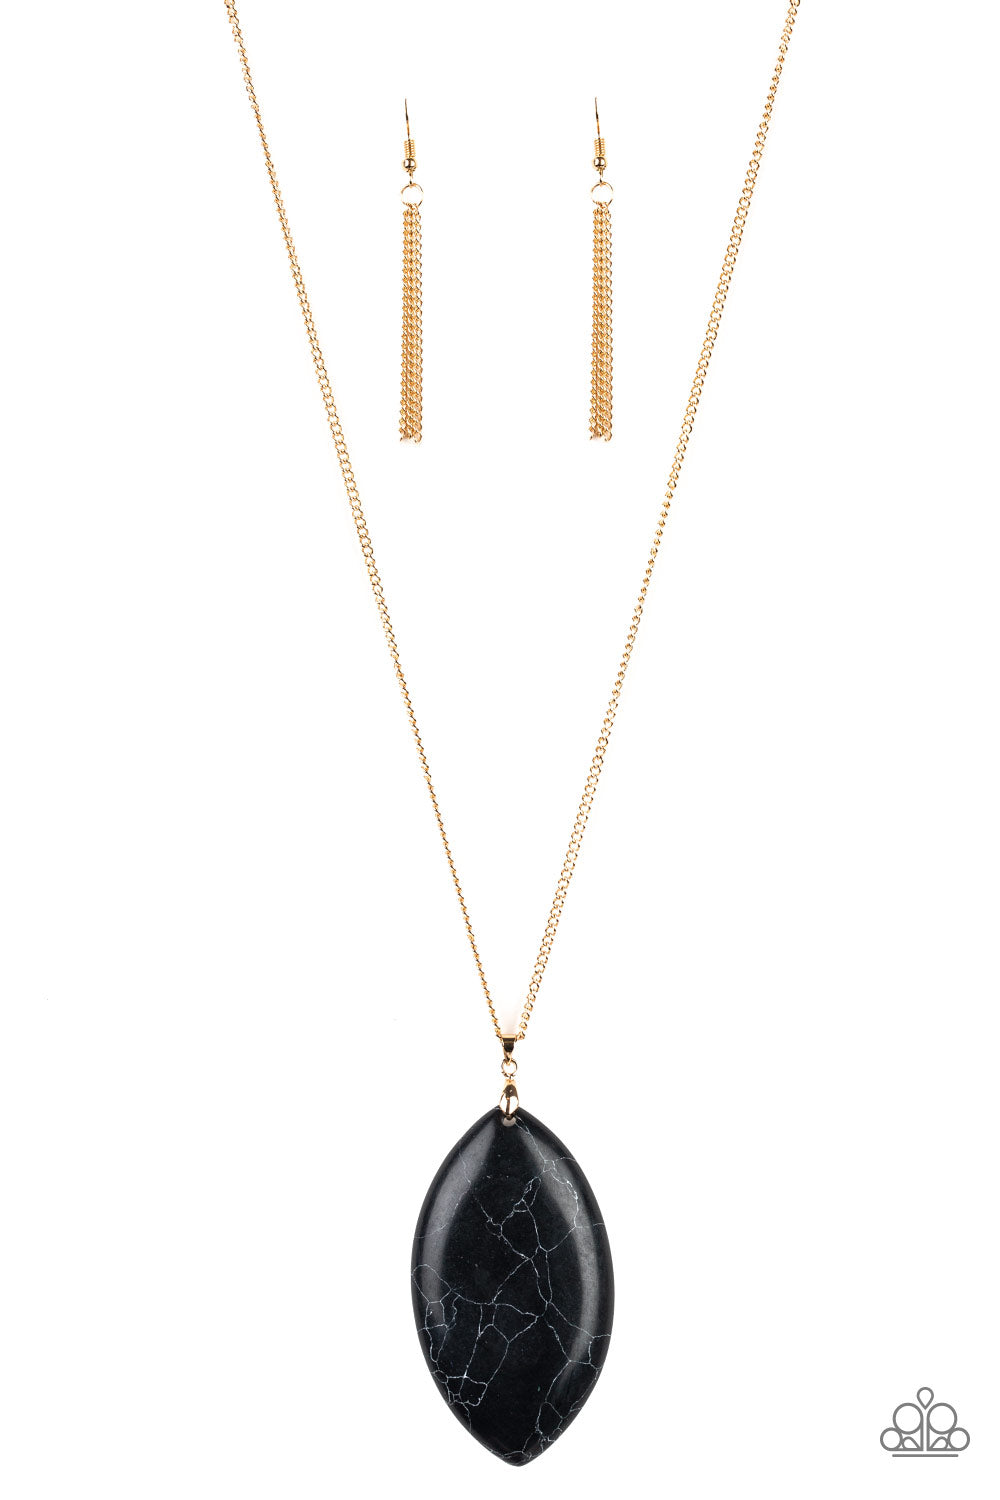 Santa Fe Simplicity - Black Necklace - Paparazzi Accessories 